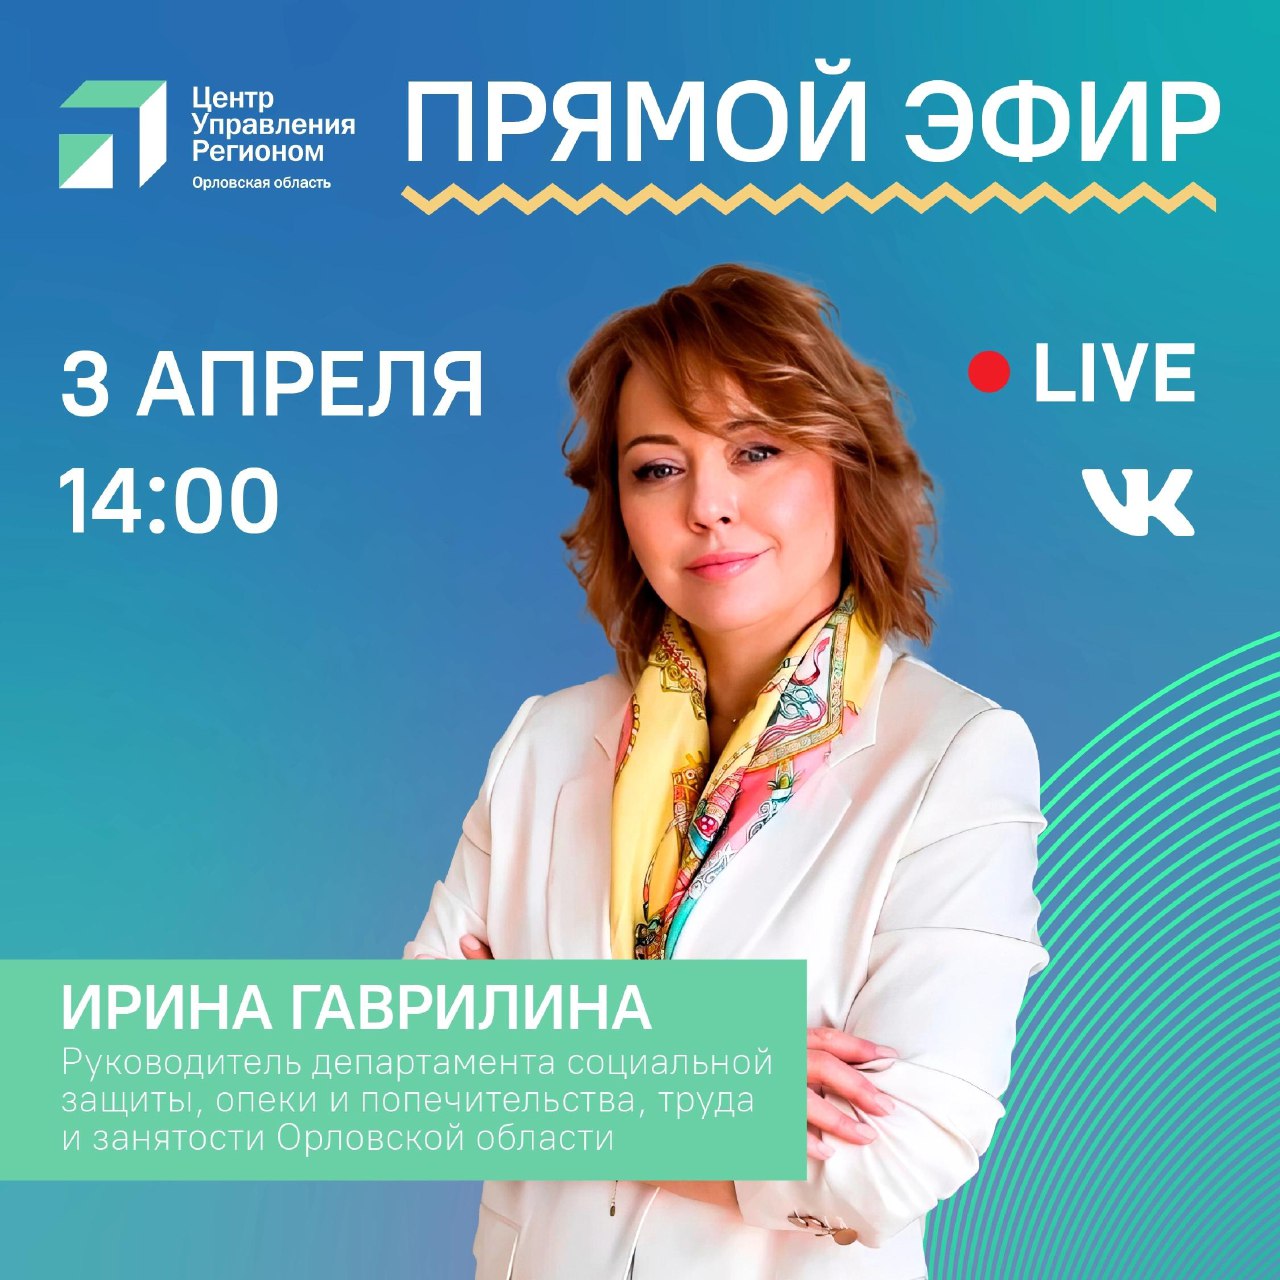 3 апреля в 14.00 состоится прямой эфир с руководителем Департамента социальной защиты Орловской области Ириной Гаврилиной